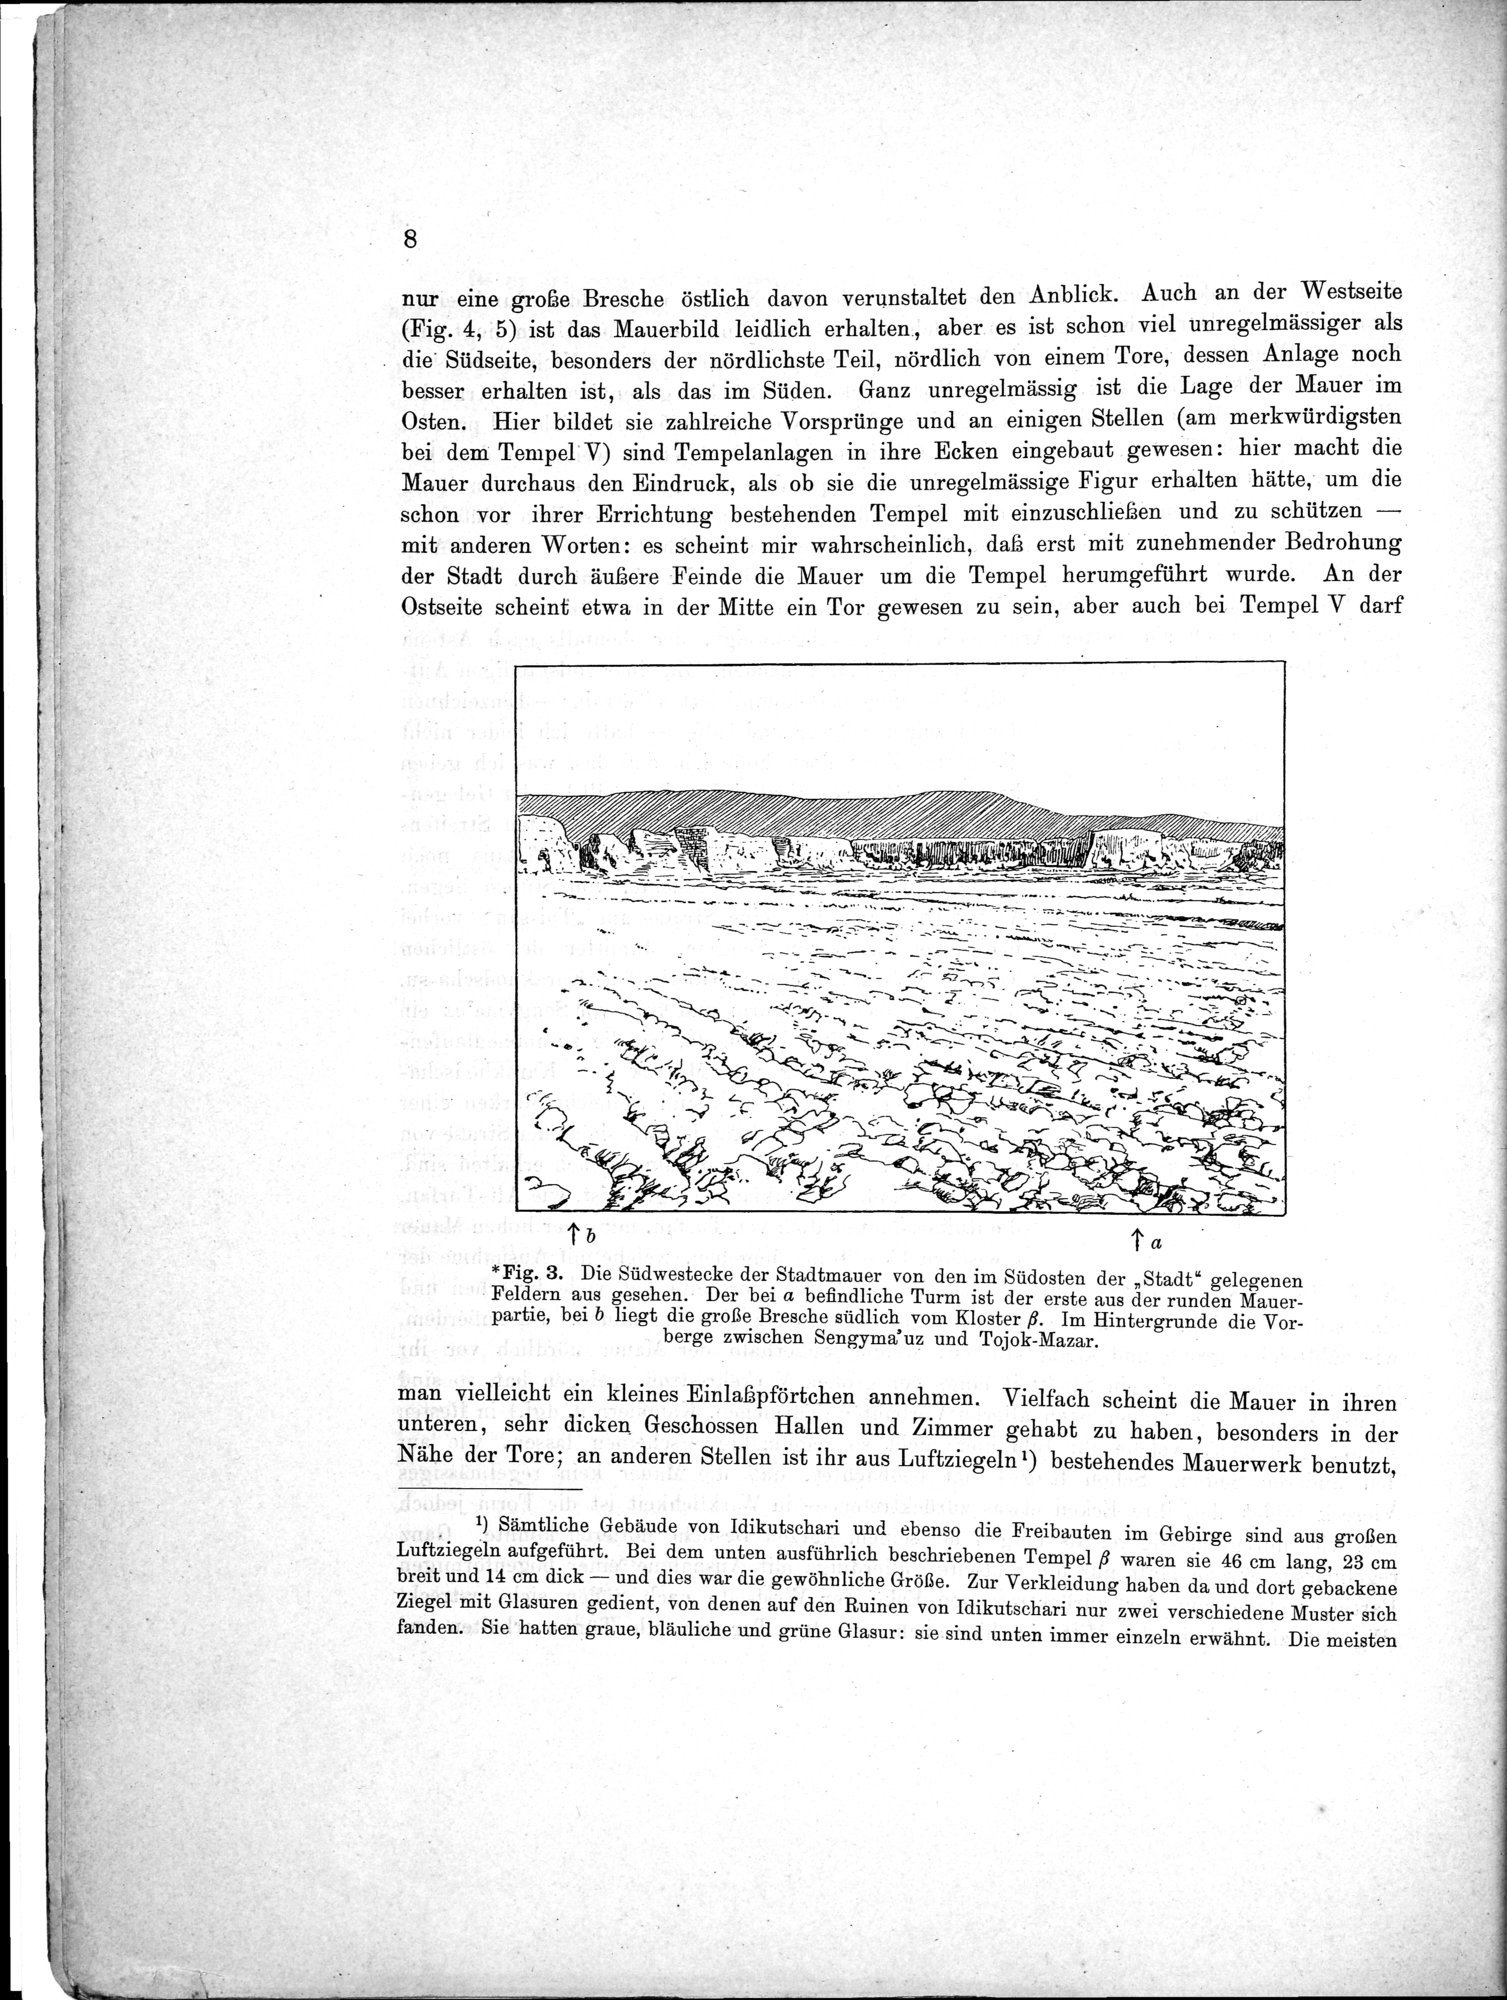 Bericht über archäologische Arbeiten in Idikutschari und Umgebung im Winter 1902-1903 : vol.1 / Page 14 (Grayscale High Resolution Image)